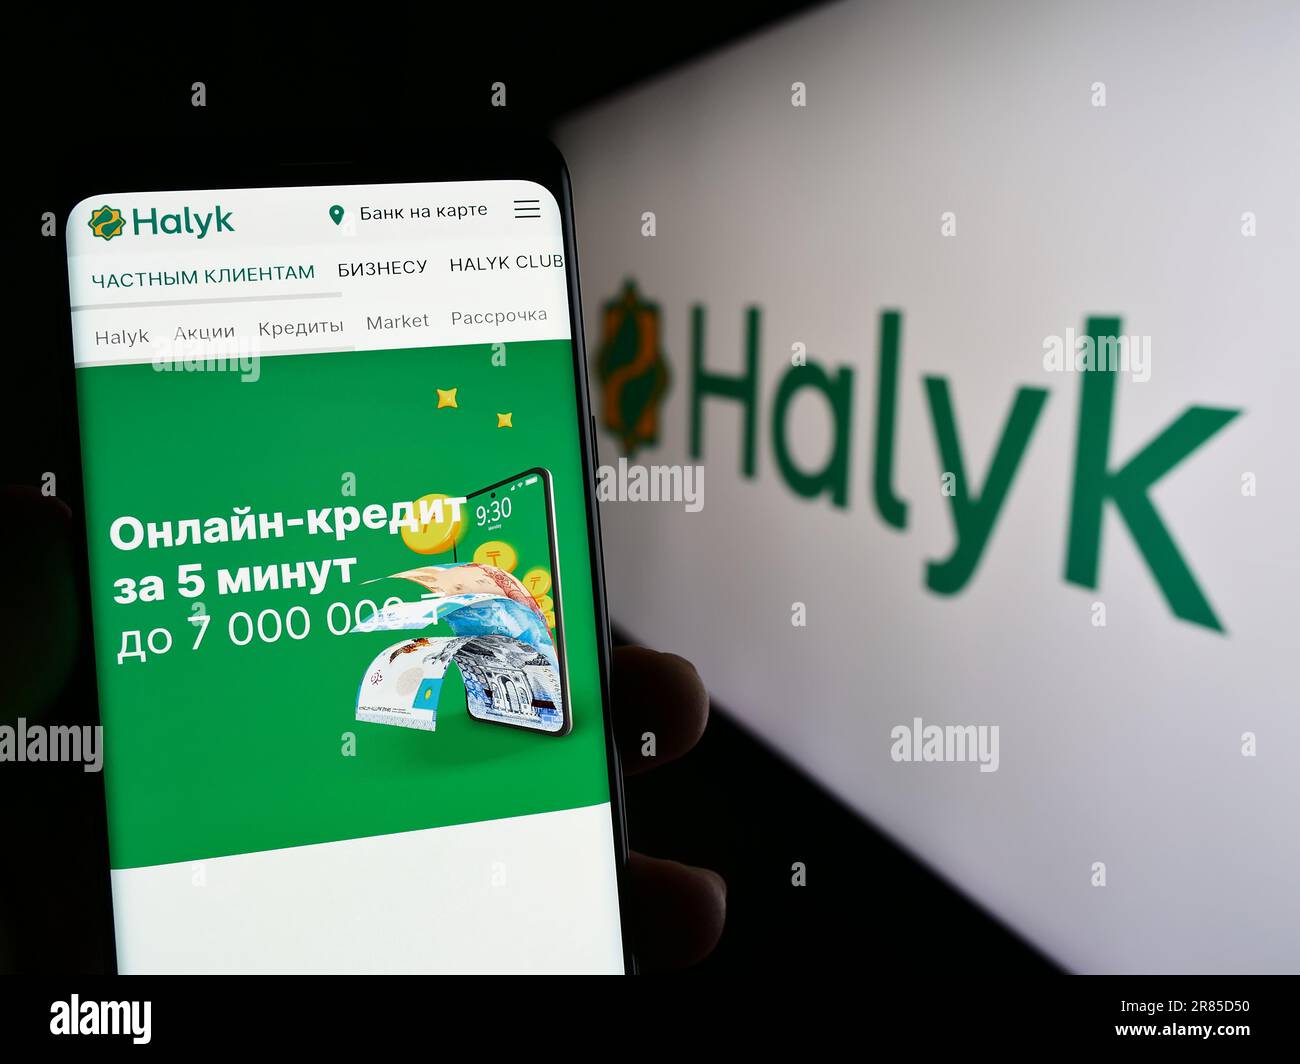 Personne tenant un smartphone avec la page web de la société de services financiers kazakh Halyk Bank à l'écran avec le logo. Concentrez-vous sur le centre de l'écran du téléphone. Banque D'Images